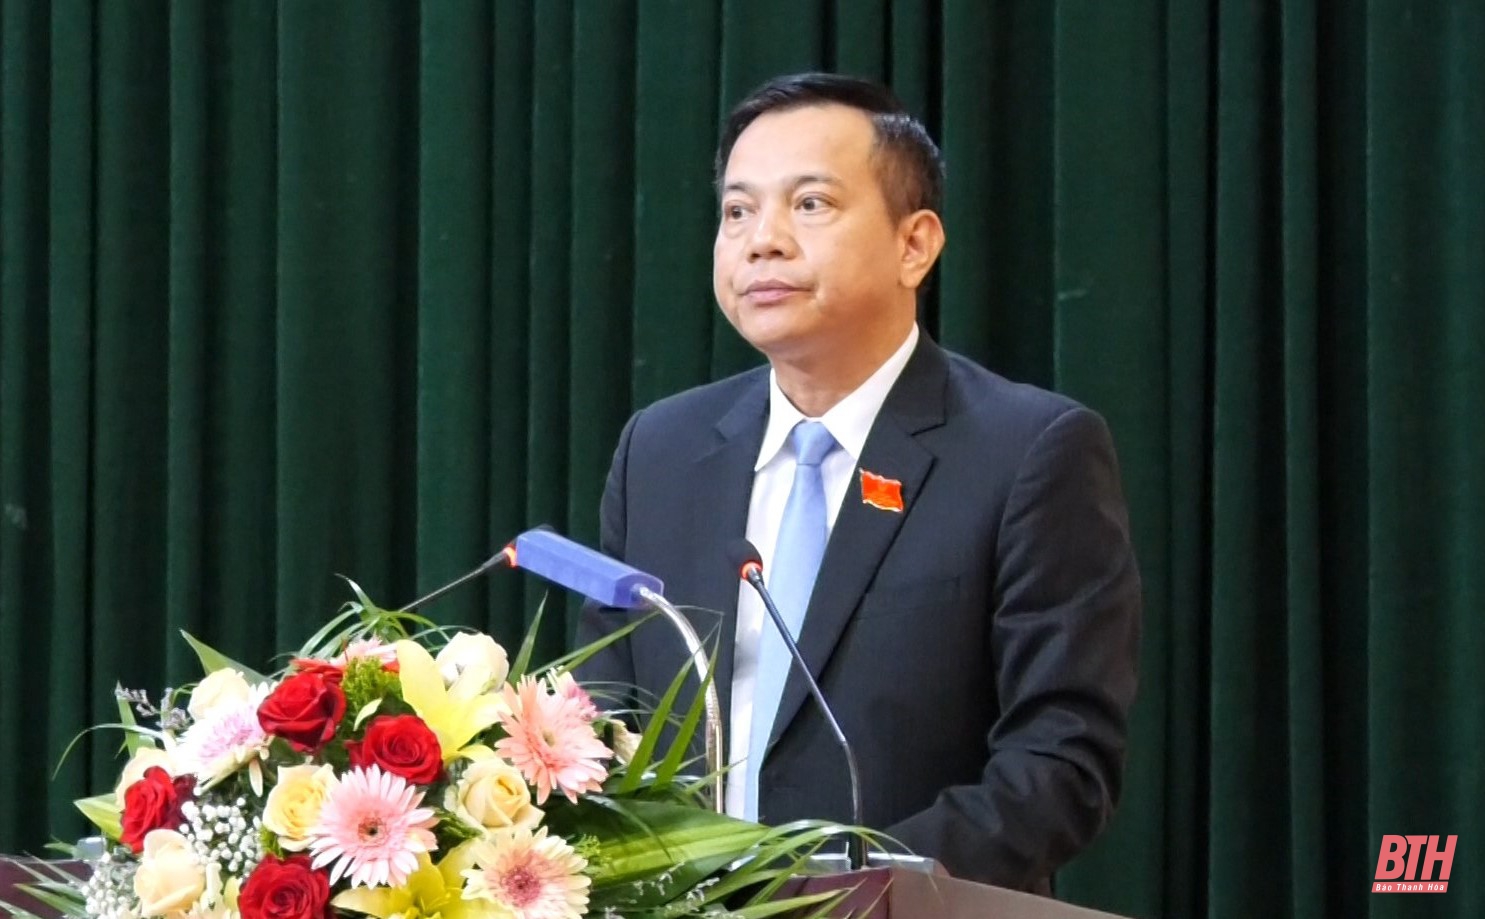 Huyện Lang Chánh tiếp tục nỗ lực thực hiện hiệu quả “mục tiêu kép” trong năm 2022